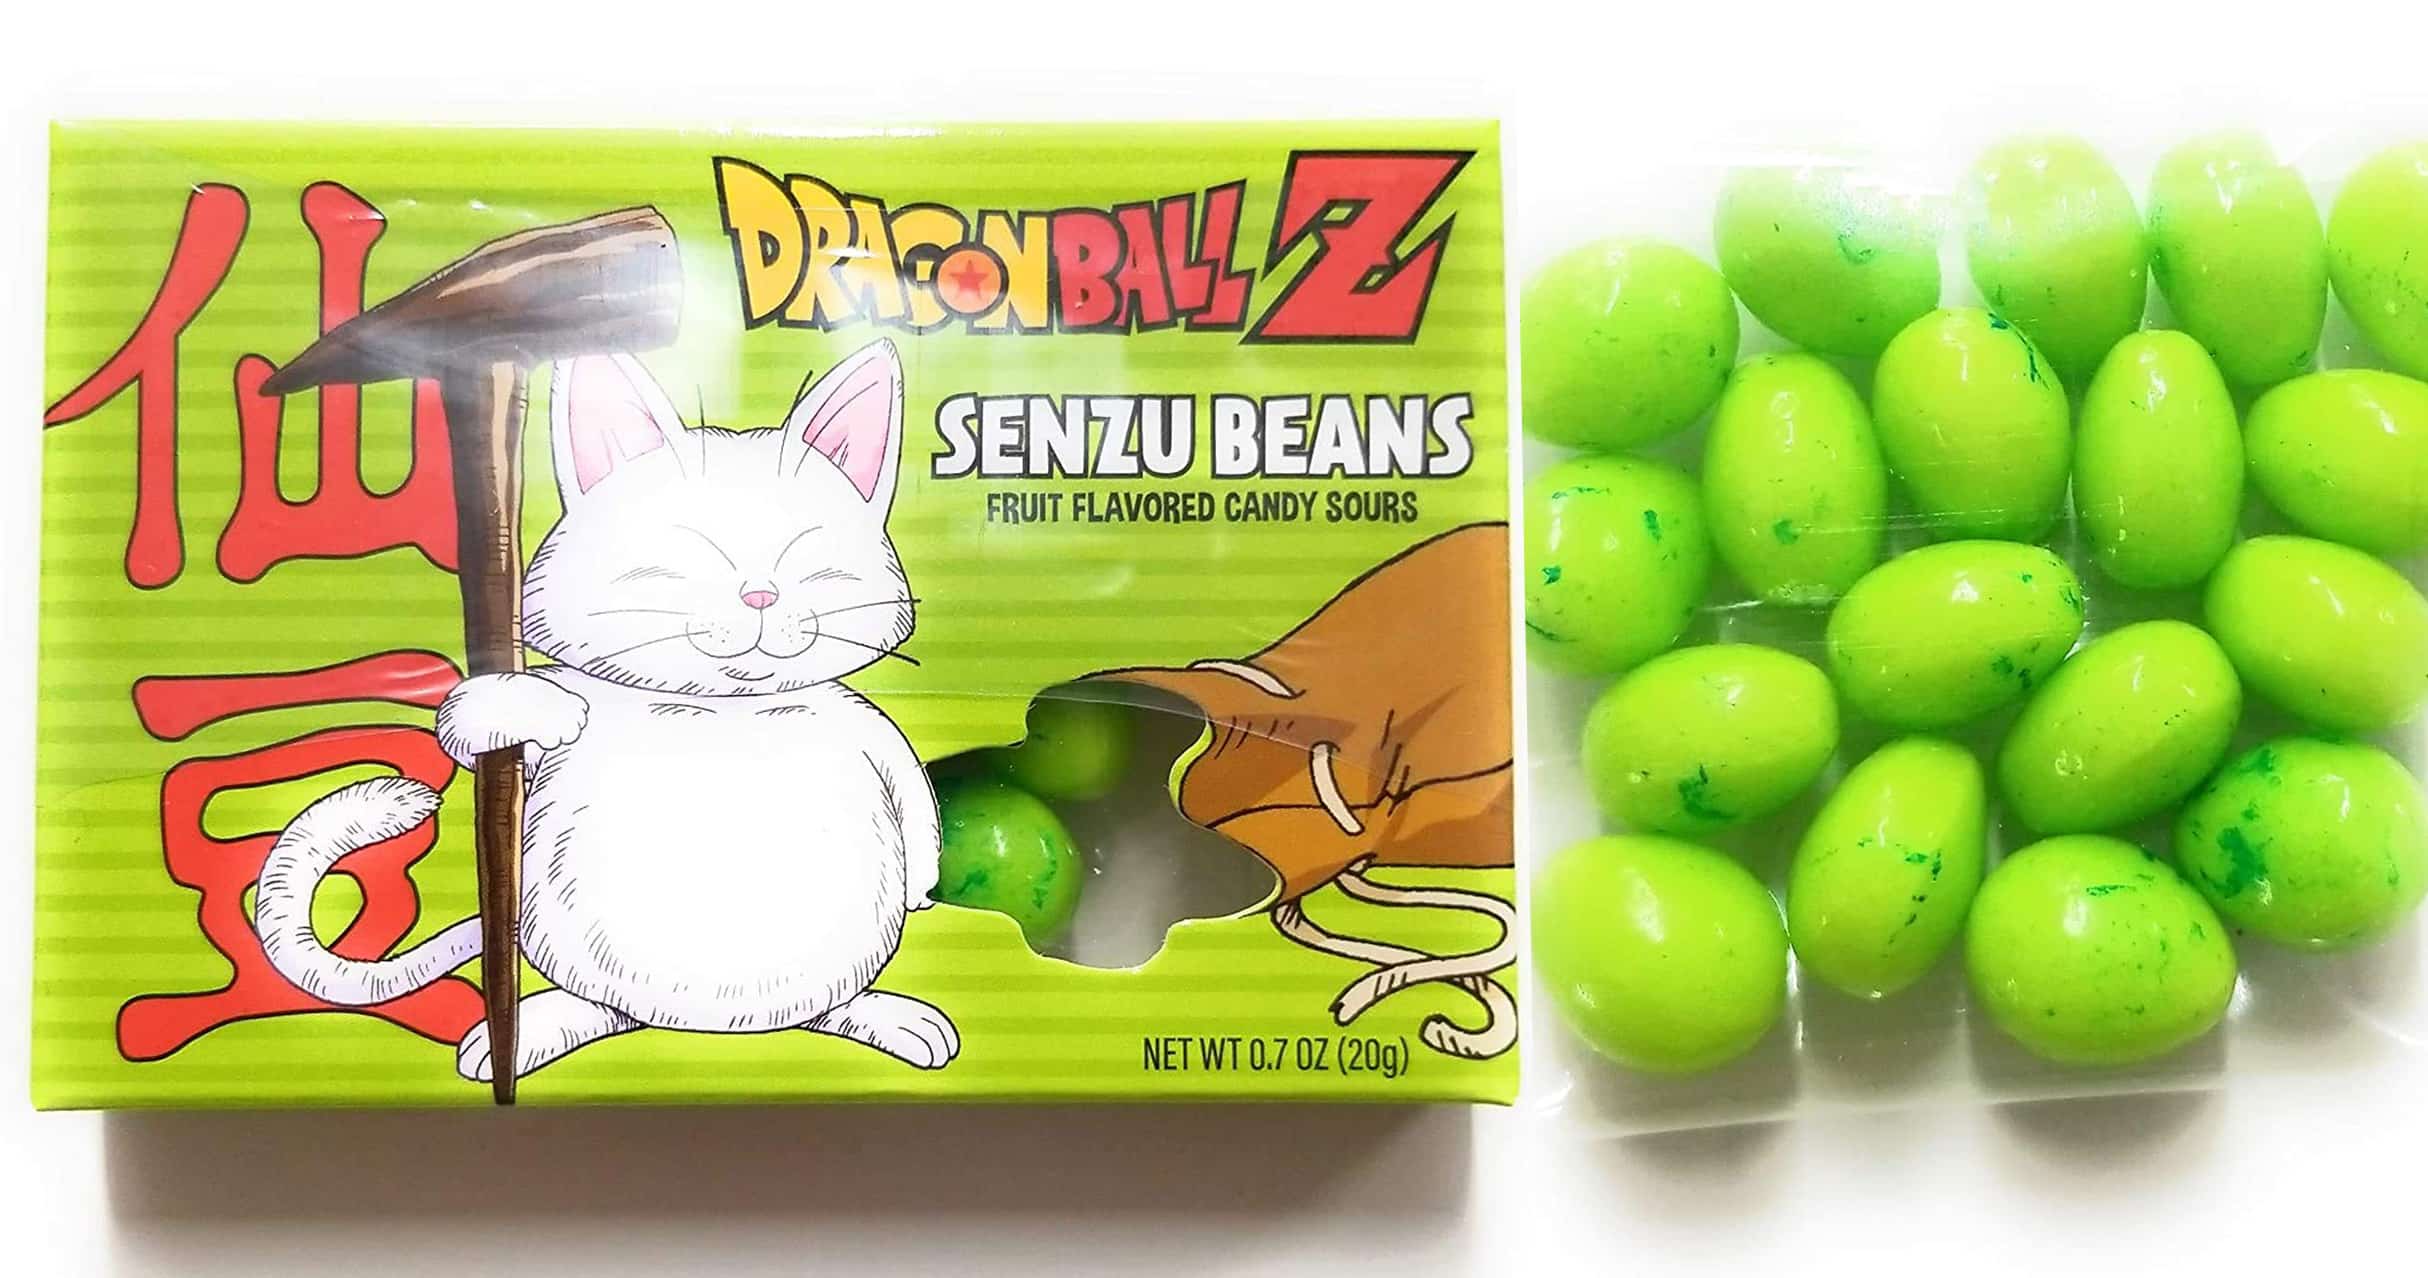 Dragonball Z Senzu Beans Candy